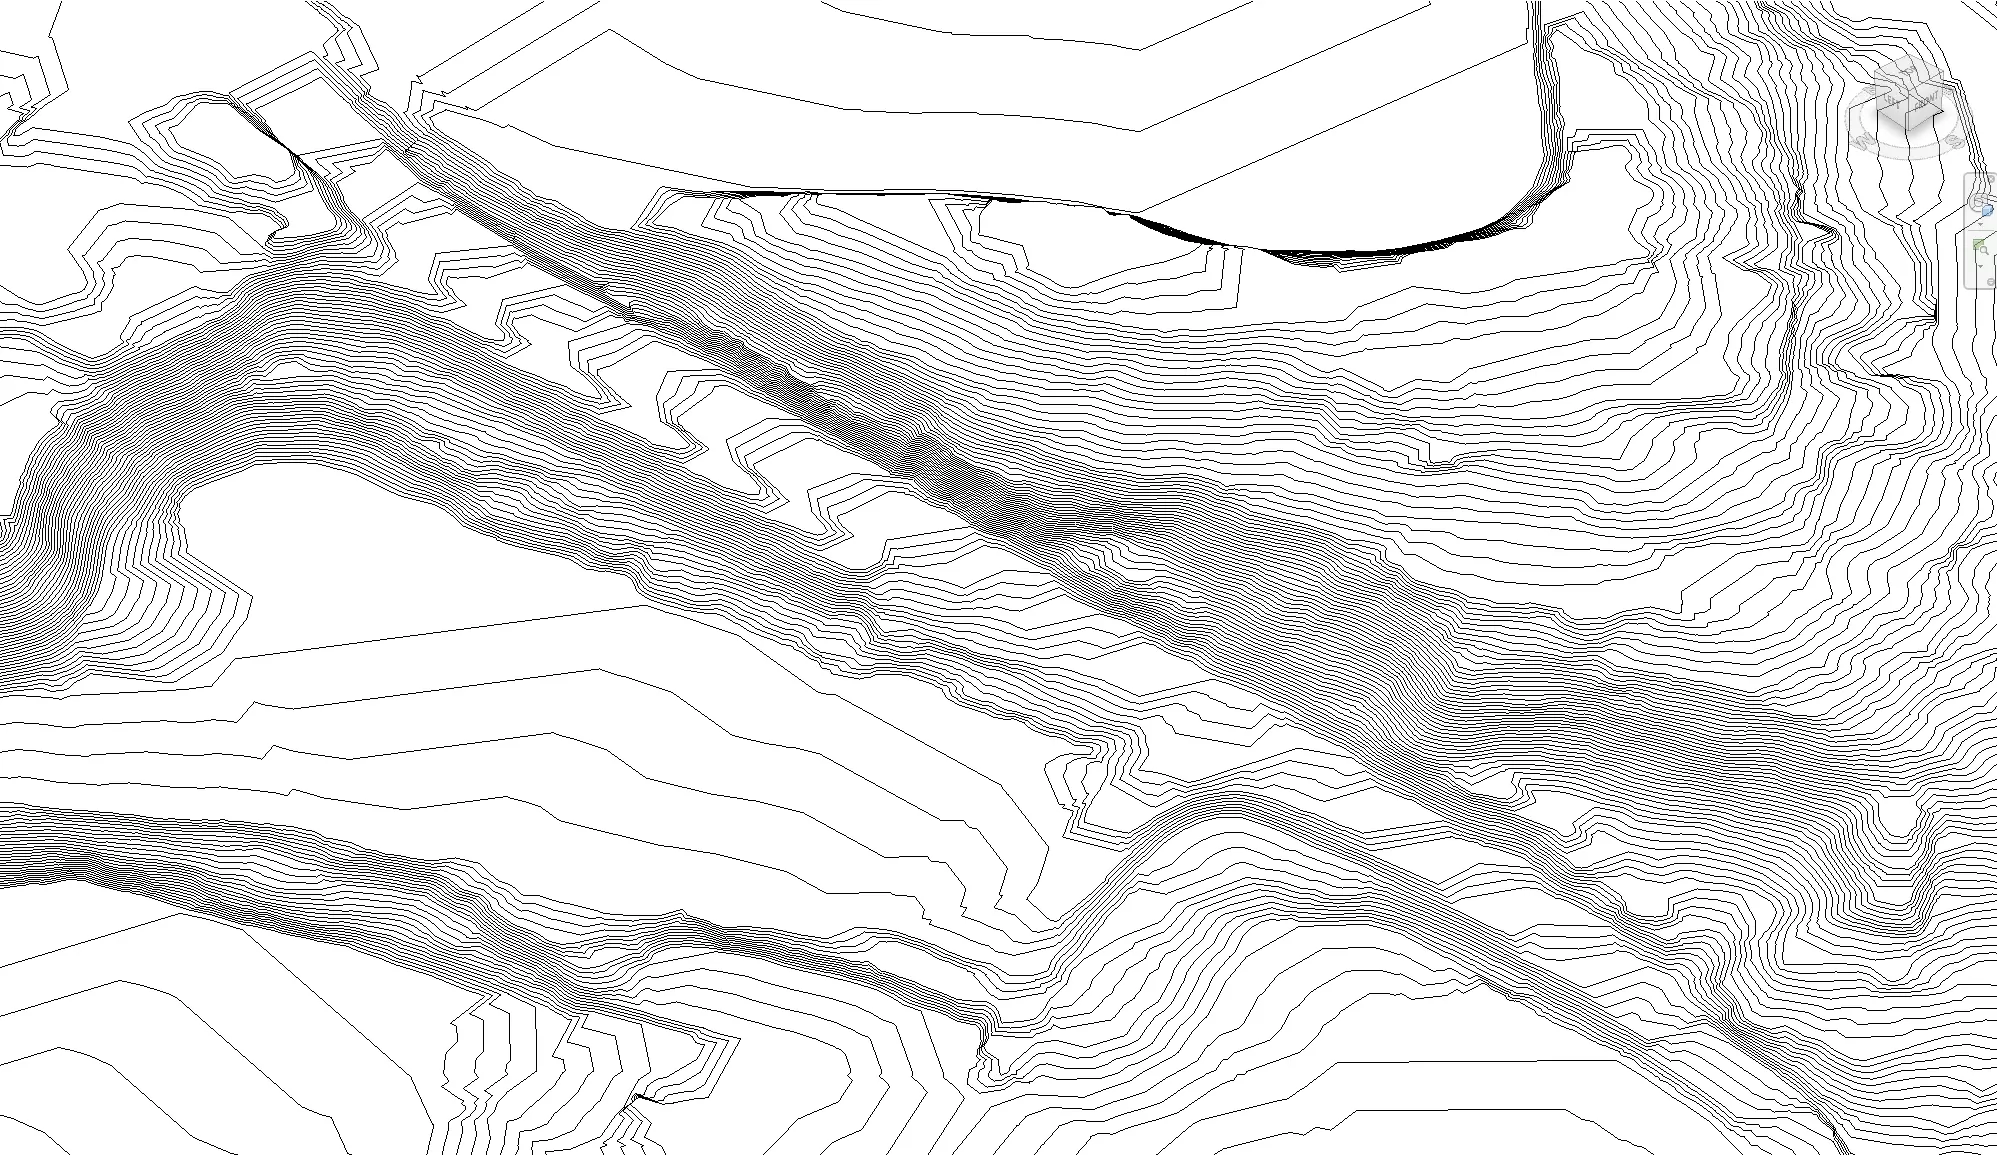 Revit Terrain with 1m contours